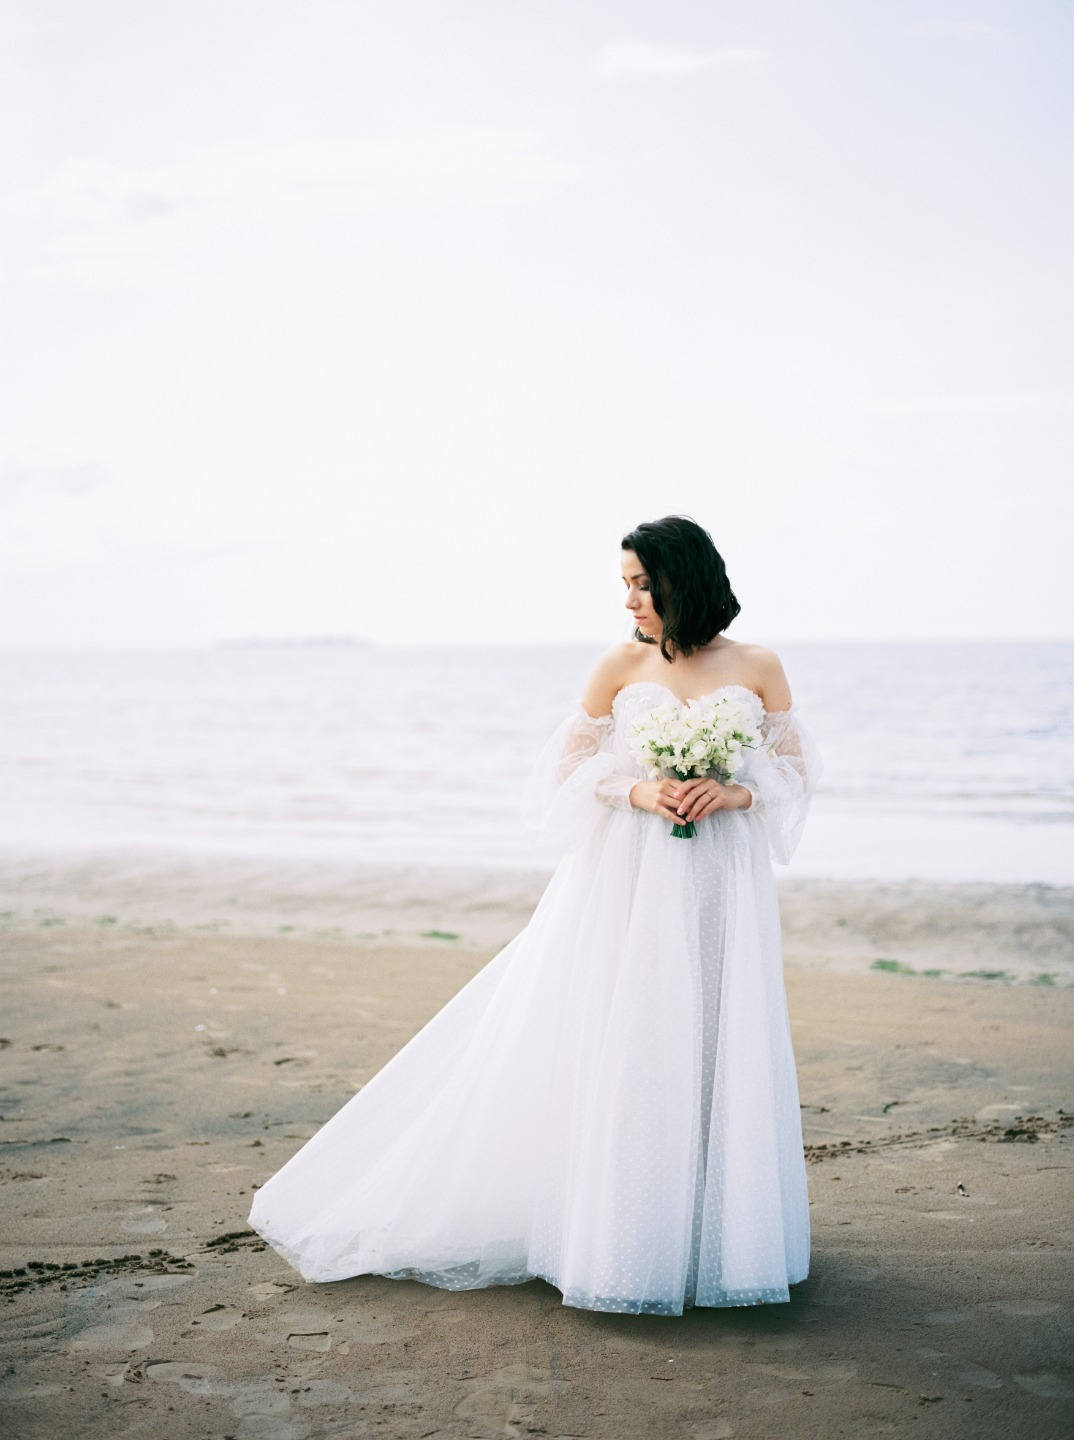 ФОТО ИЗ СТАТЬИ: Романтическая свадьба на берегу Финского залива